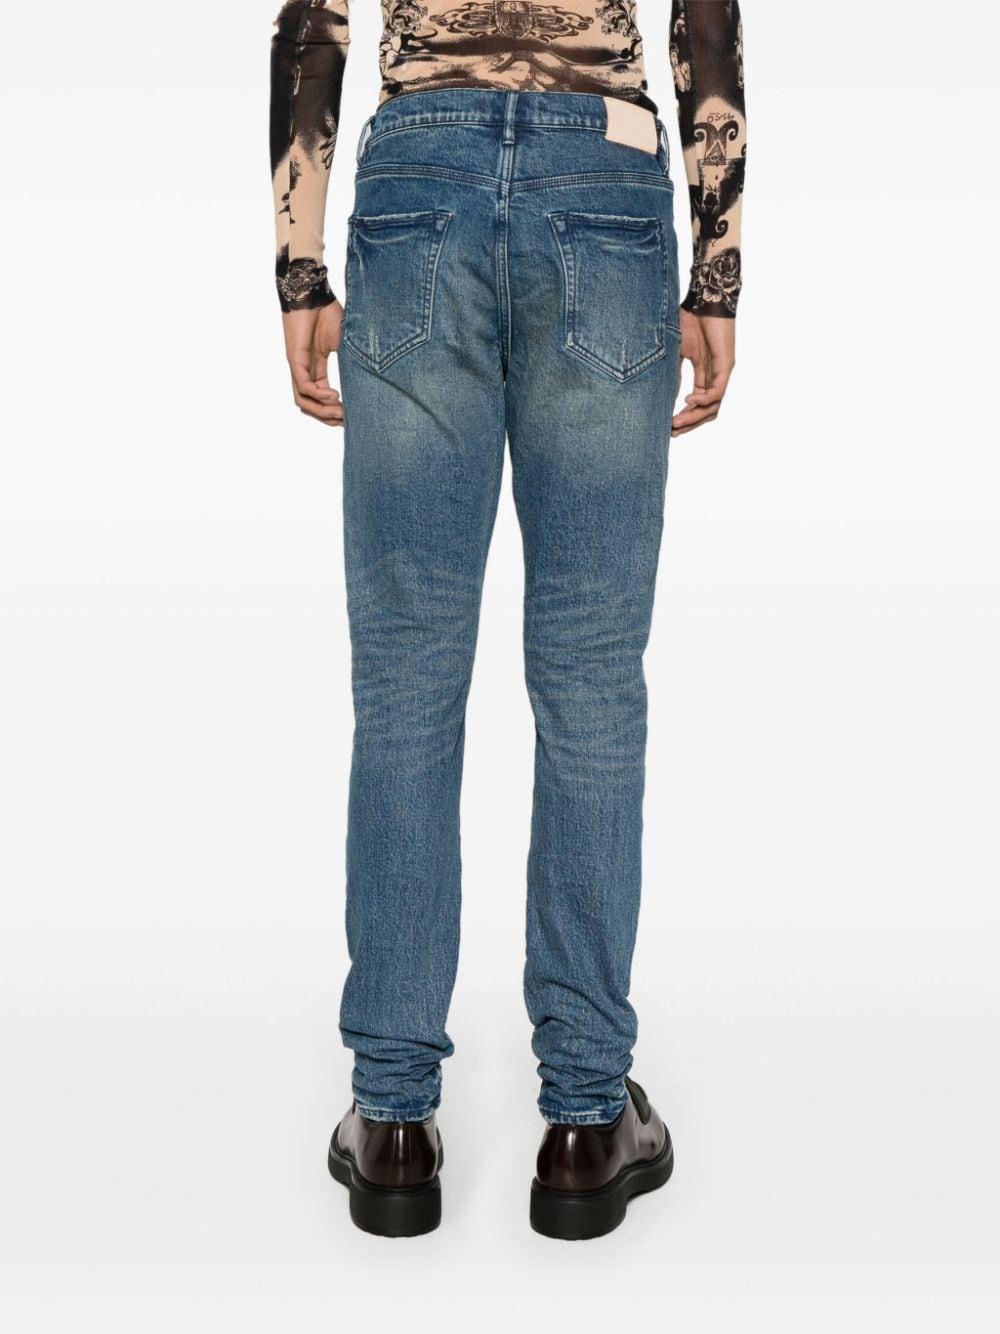 Purple Brand Jeans Mens Slim Fit Low Rise P001 Blue $295 Size 36/32